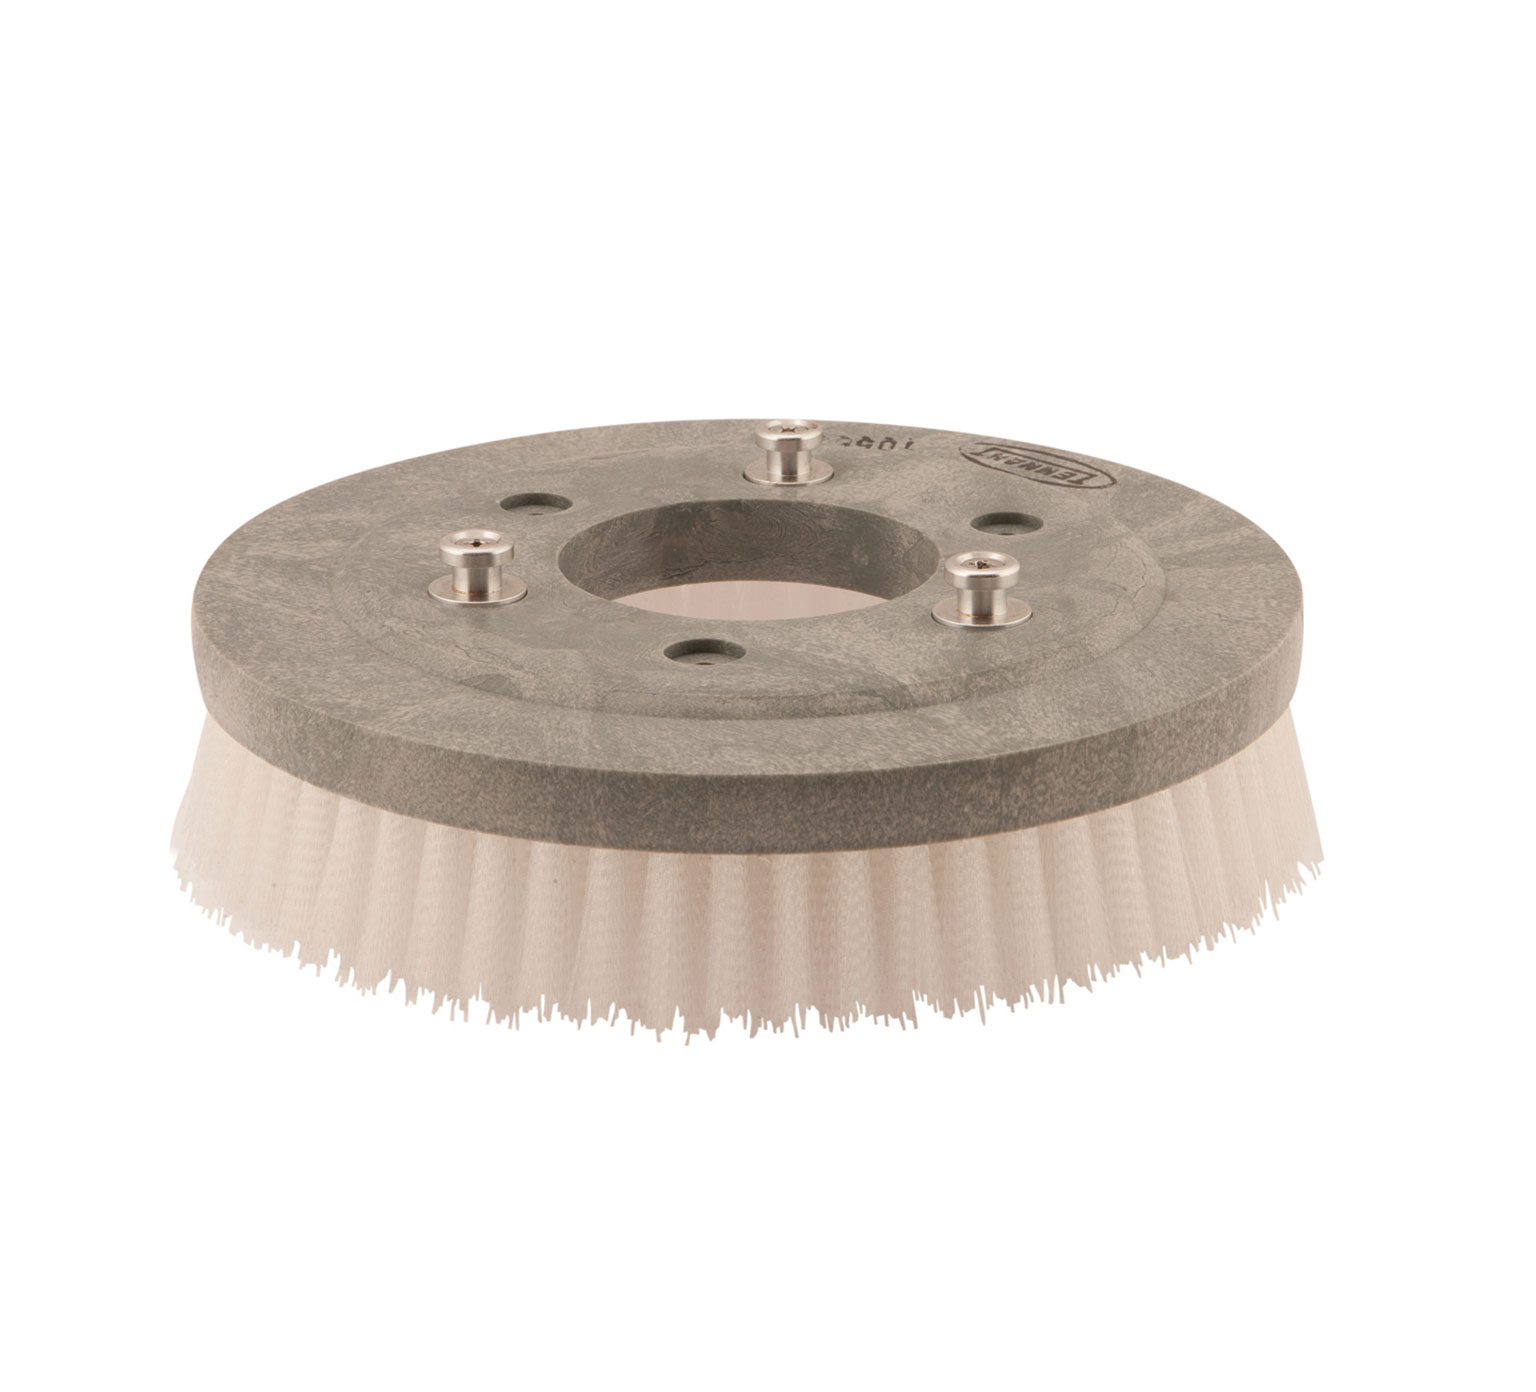 1056306 Nylon Disk Scrub Brush Assembly &#8211; 12 in / 304.8 mm alt 1